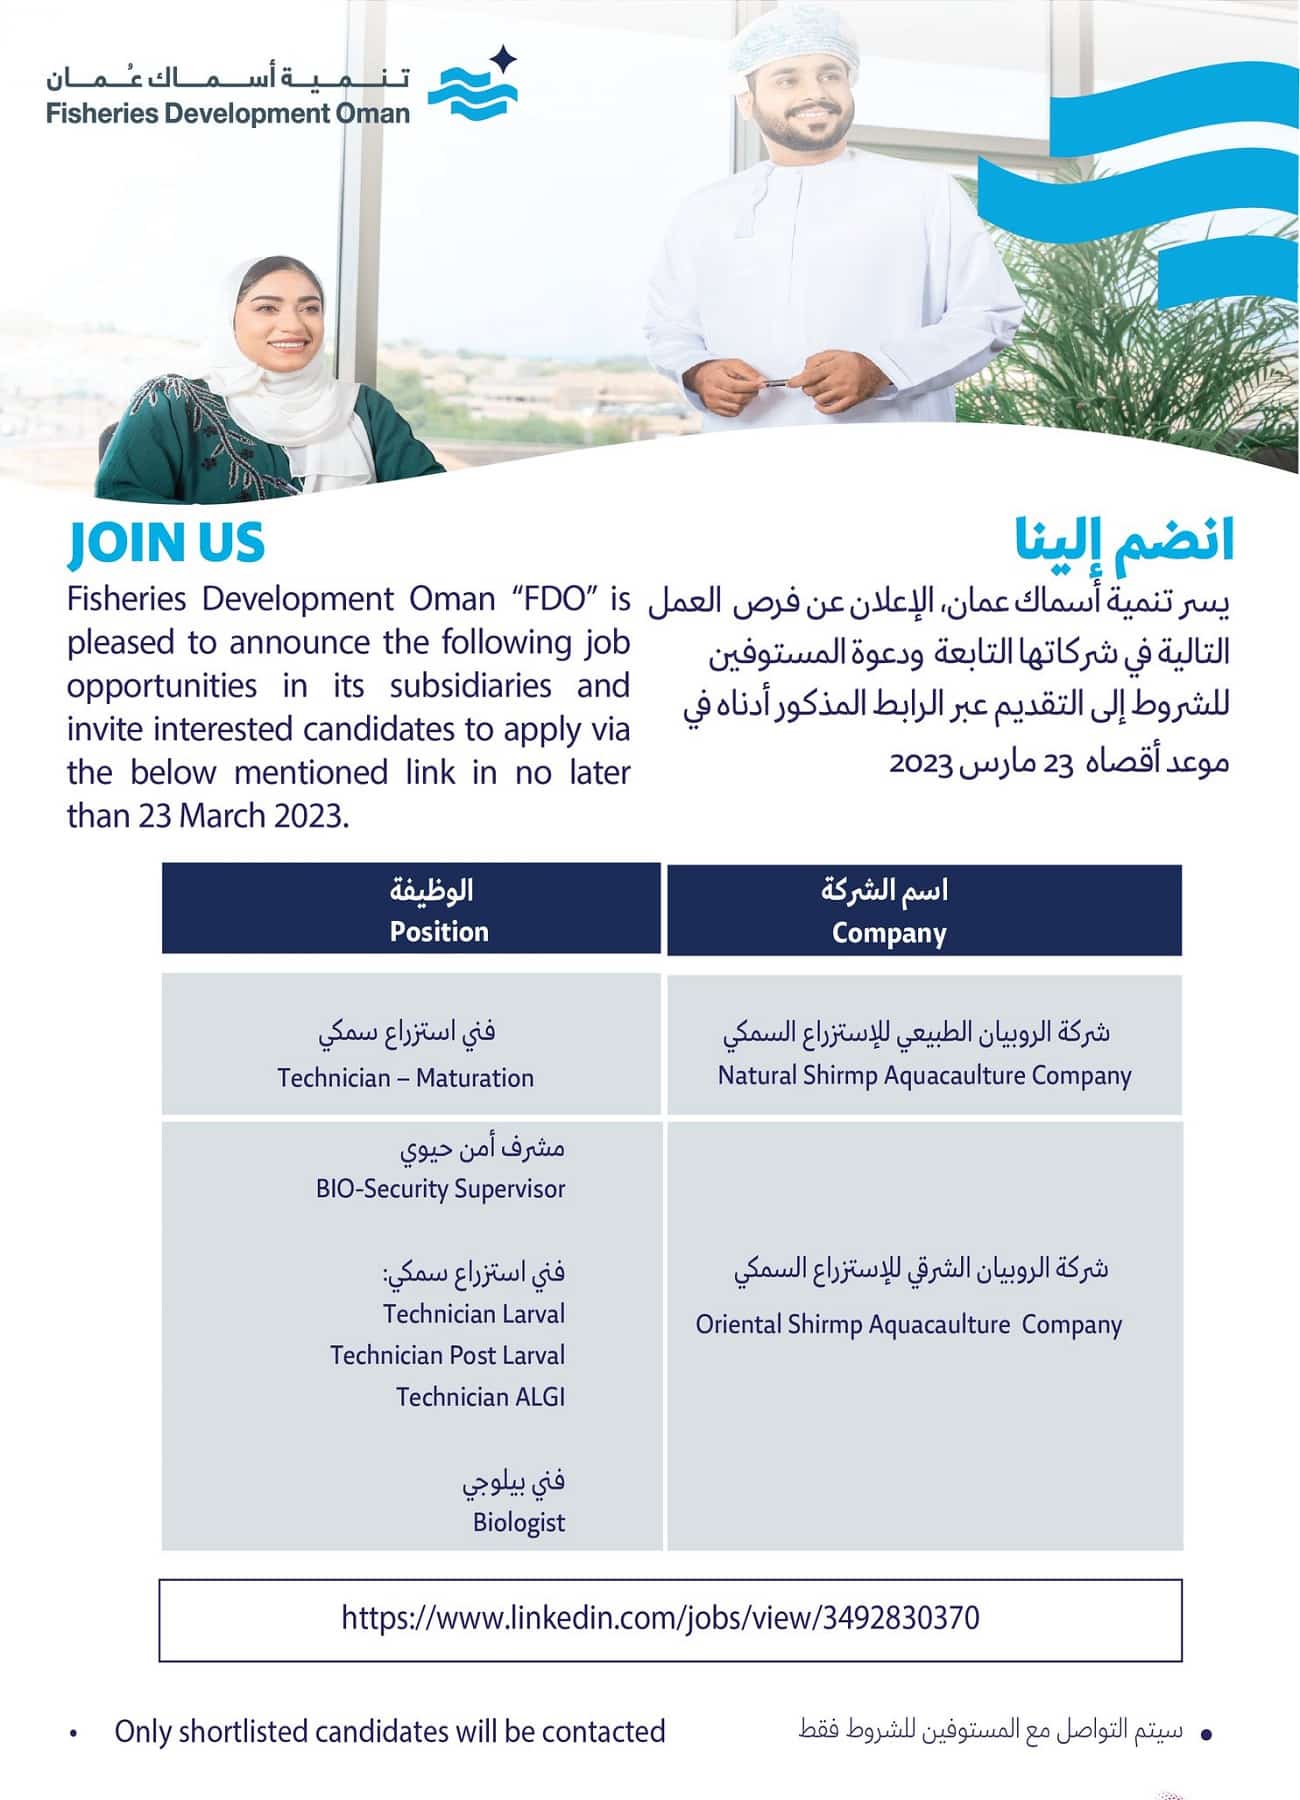 وظائف شاغرة لدي شركة تنمية أسماك عمان برواتب ومزايا عالية لجميع الجنسيات